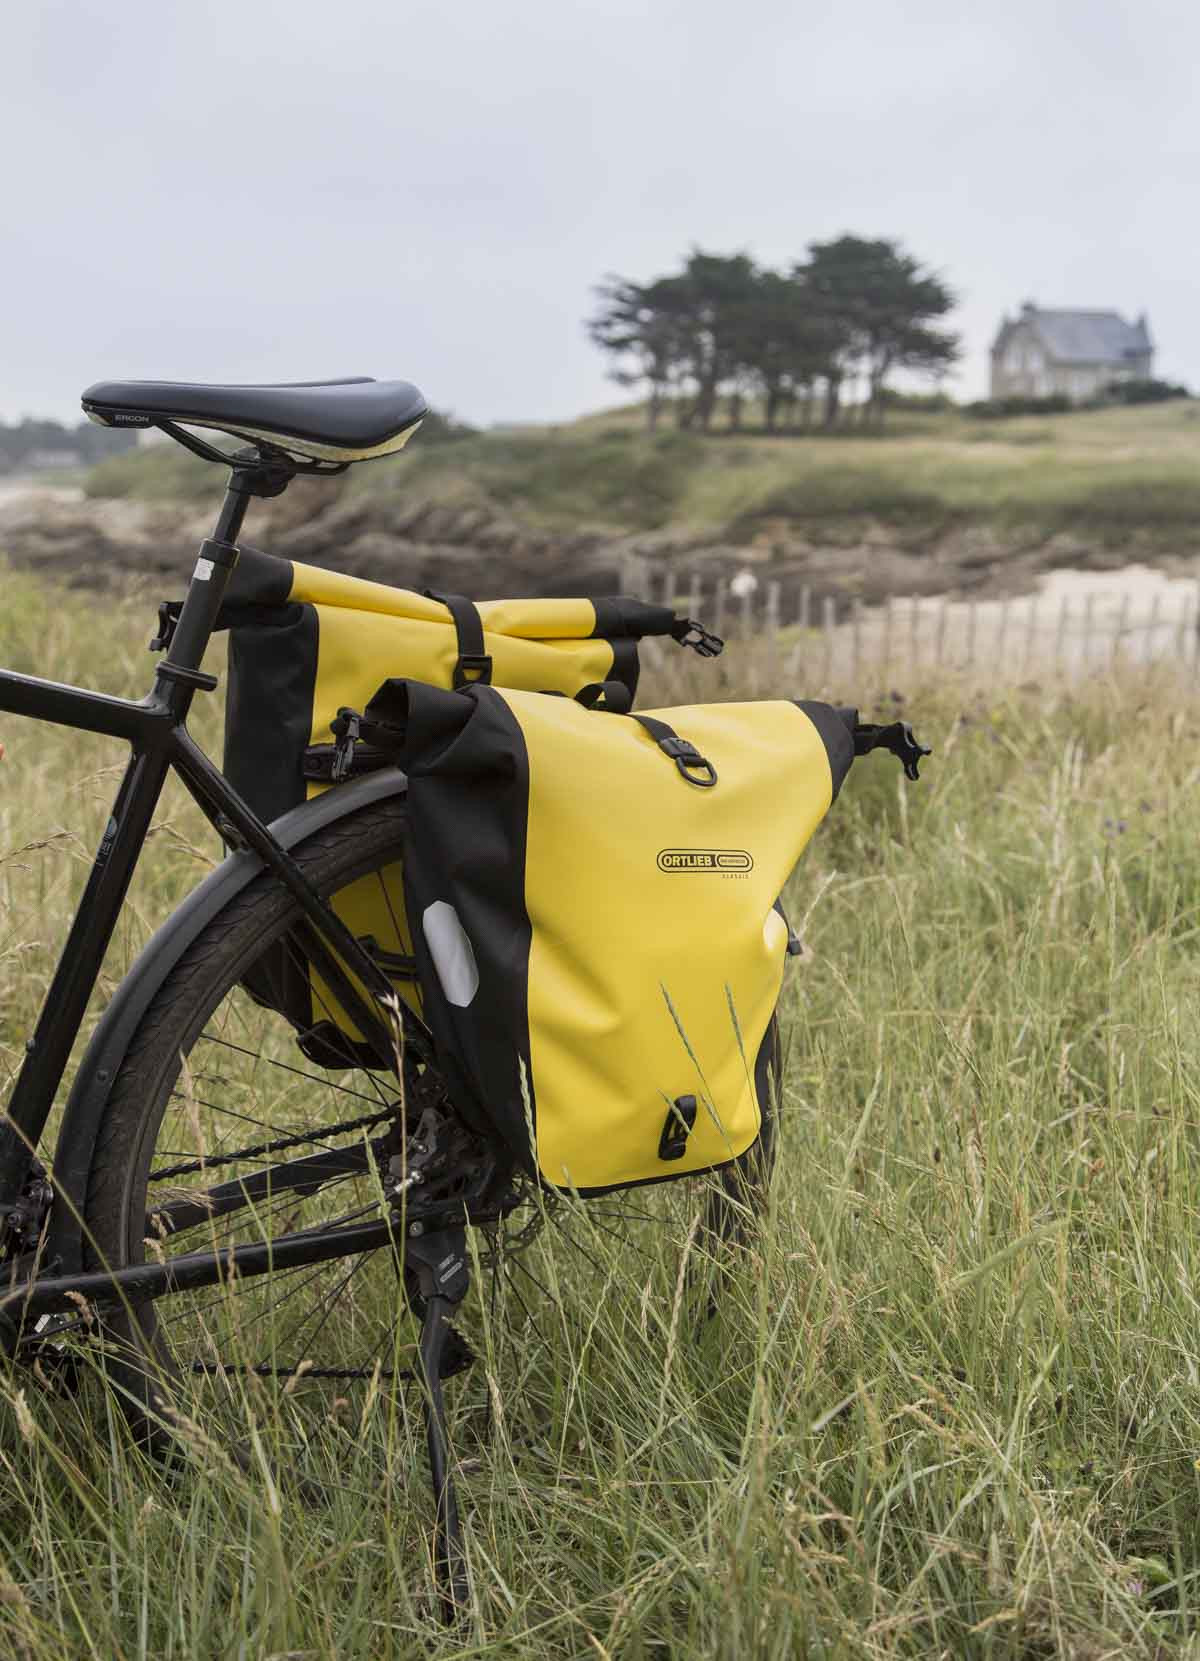 Filet élastique pour porte-bagages vélo PACK (2)